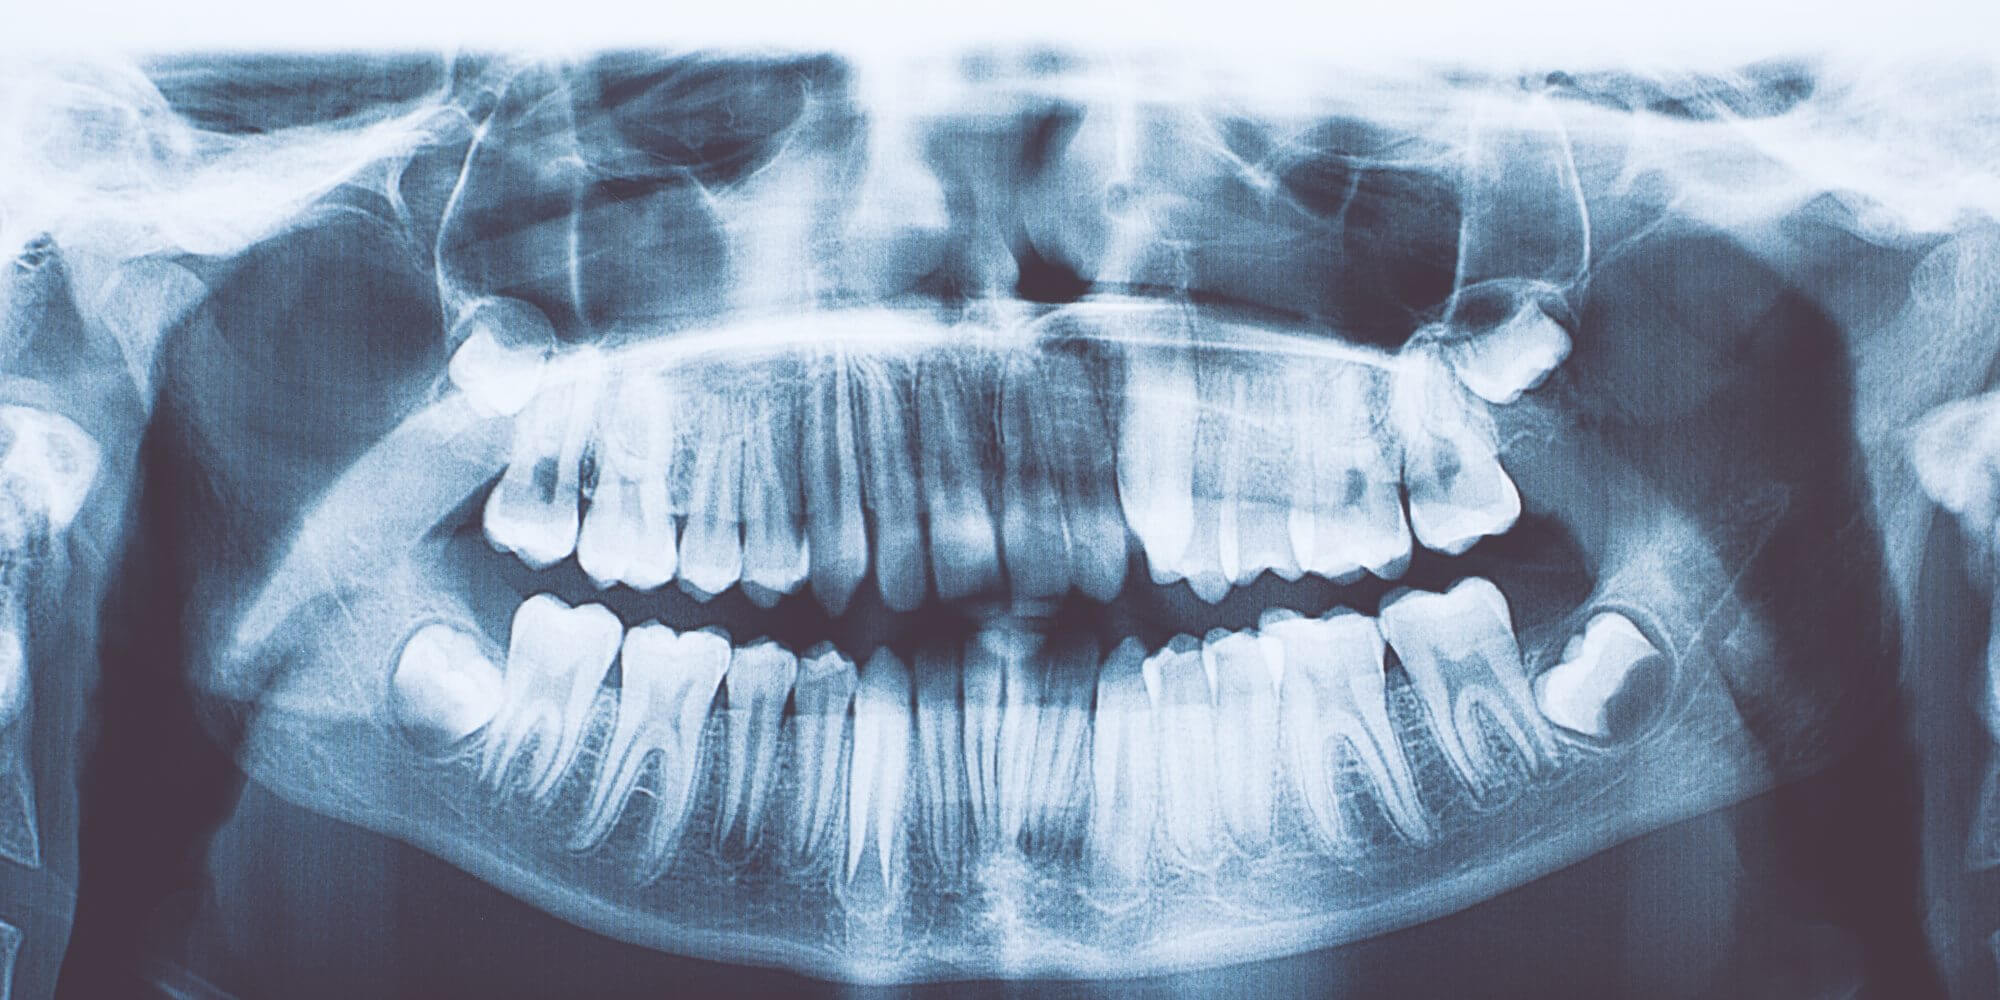 Bei dem indischen Jungen gefunden 526 unnötige Zähne. Was ist das für eine Krankheit?